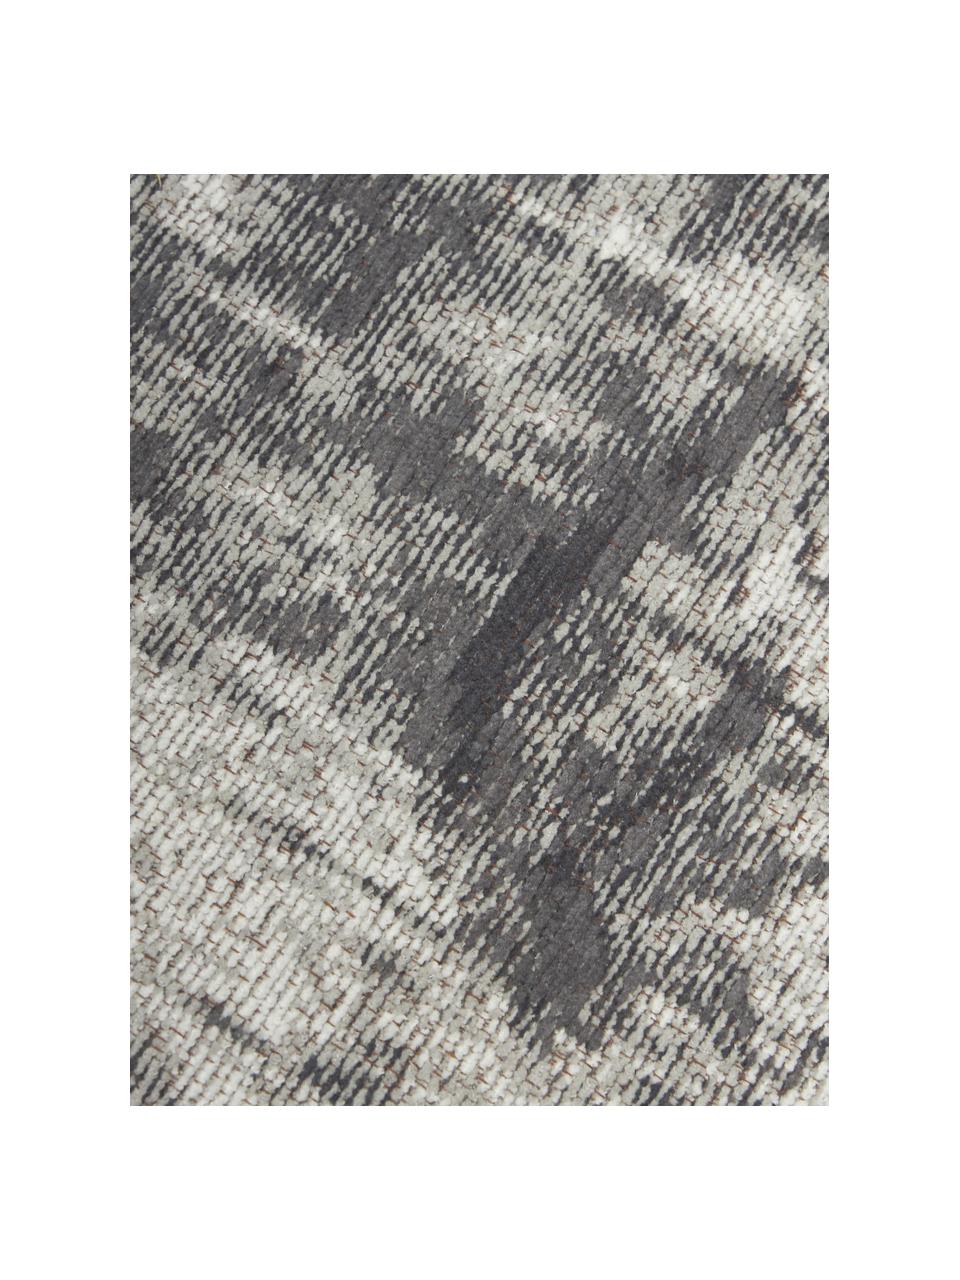 Ručně tkaný bavlněný běhoun ve vintage stylu Luise, Odstíny šedé a bílé, Š 80 cm, D 250 cm